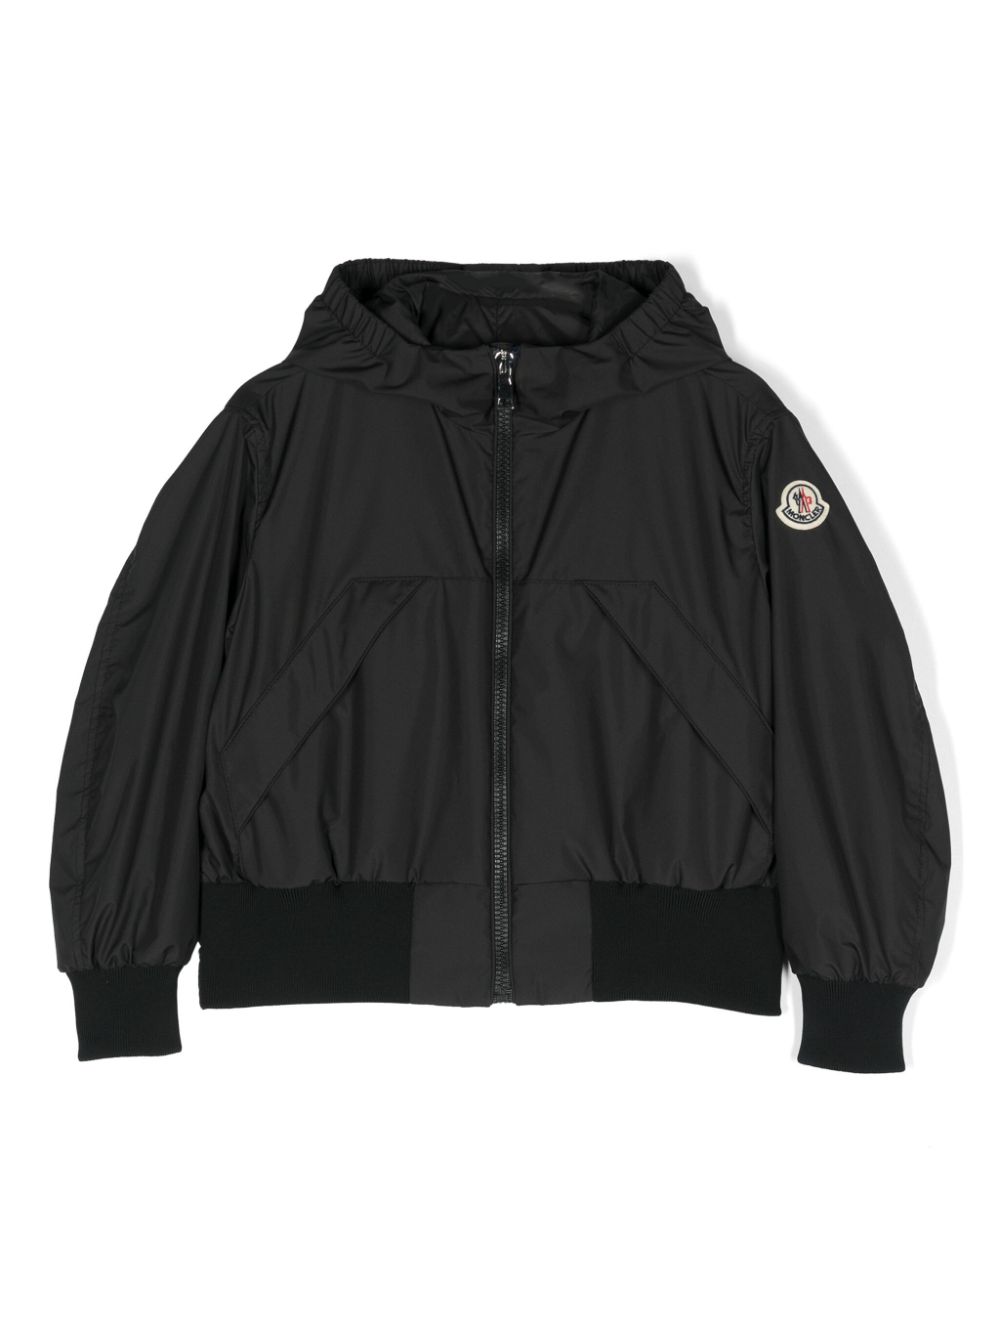 Moncler Enfant Assia hooded jacket - Black von Moncler Enfant